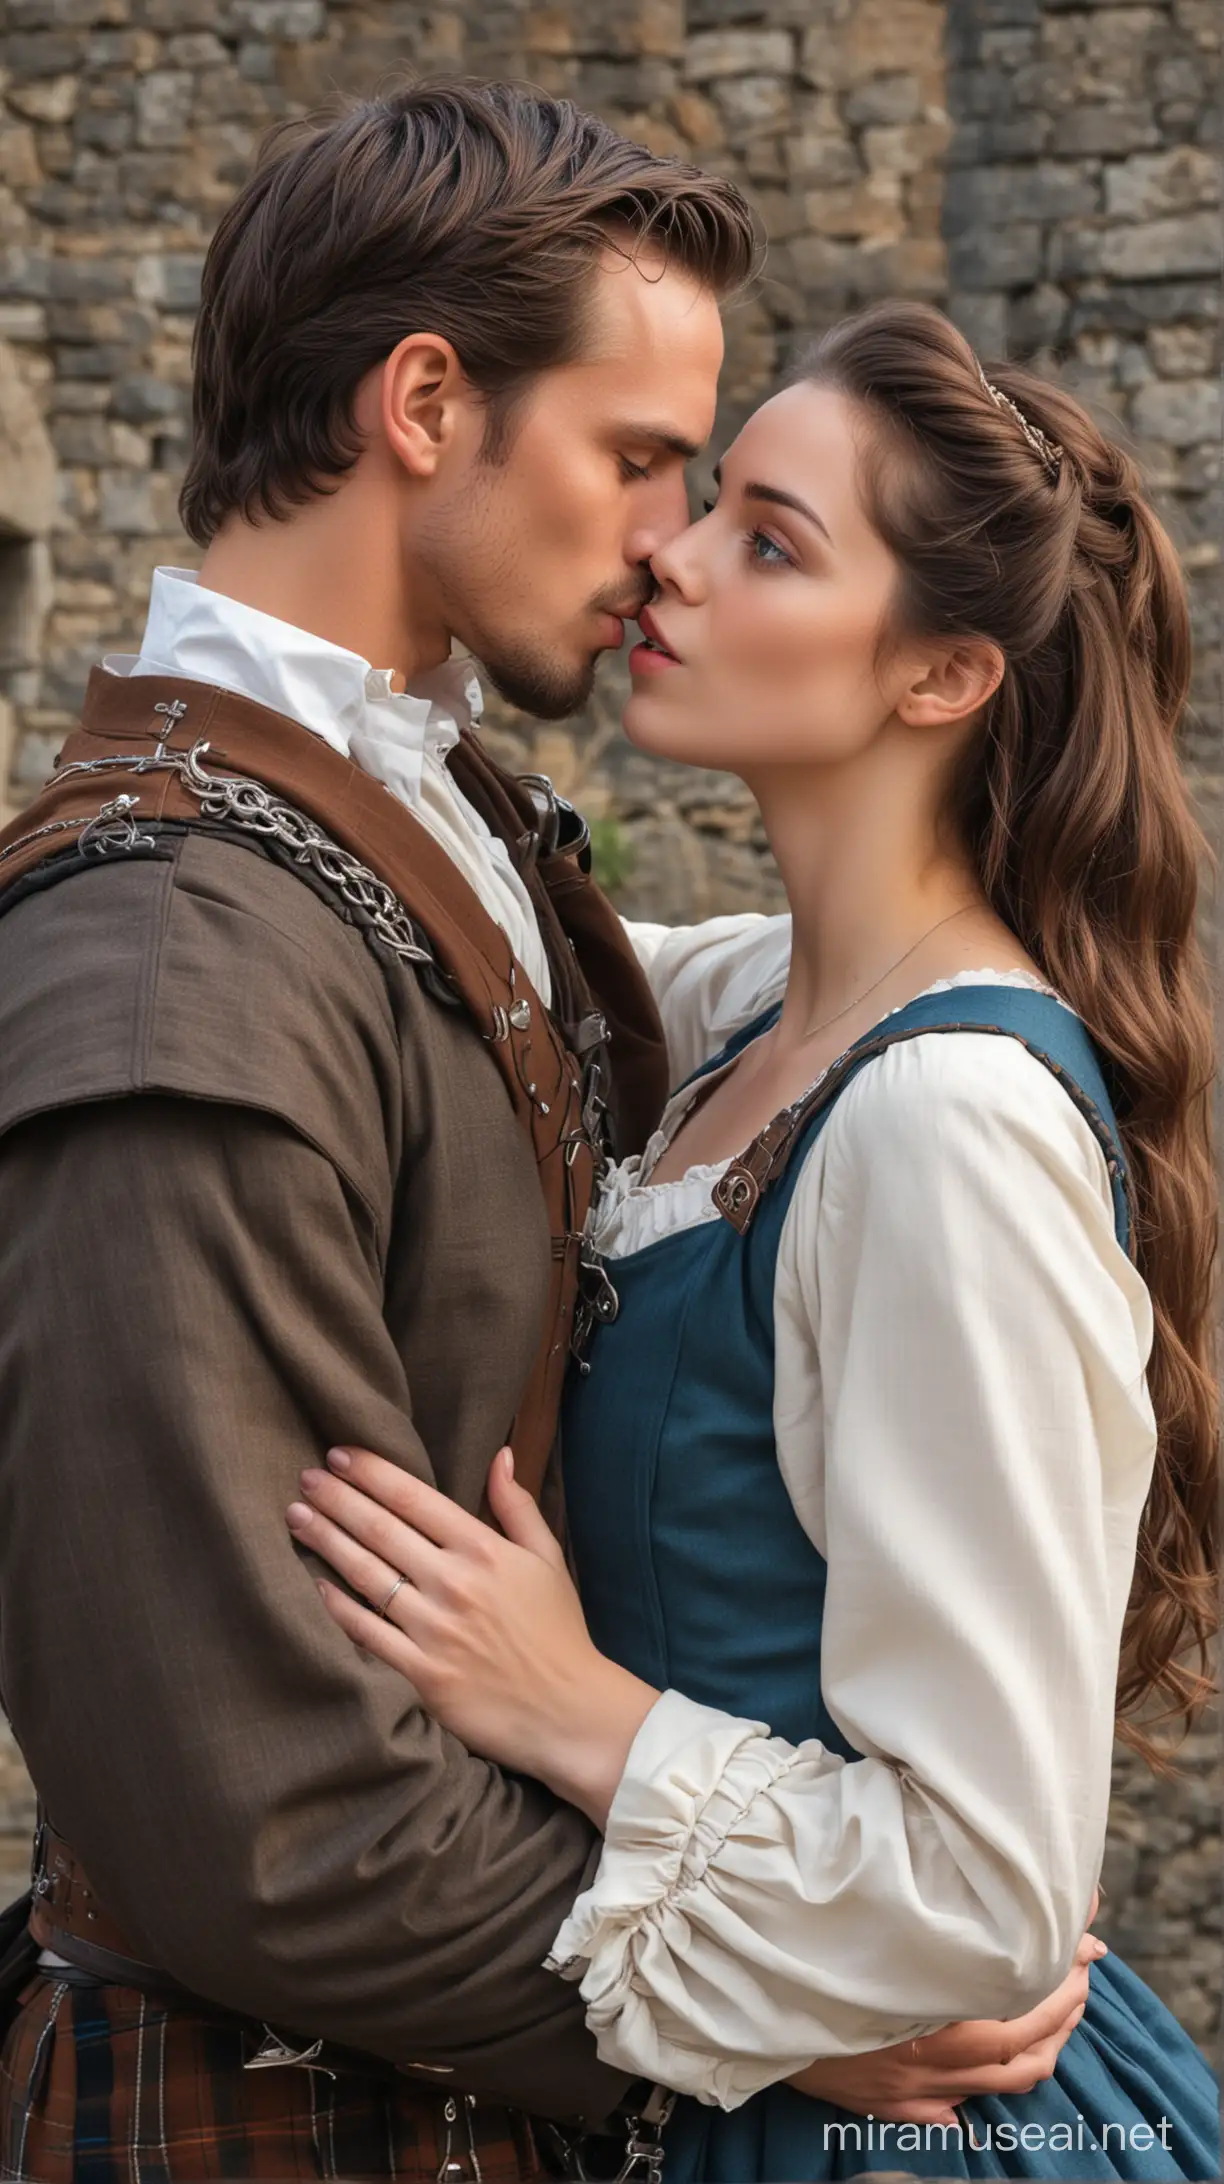 Hombre guapo pelo color castaño Escocés kilt atractivo ojos azules época medieval besando a mujer joven guapa morena
